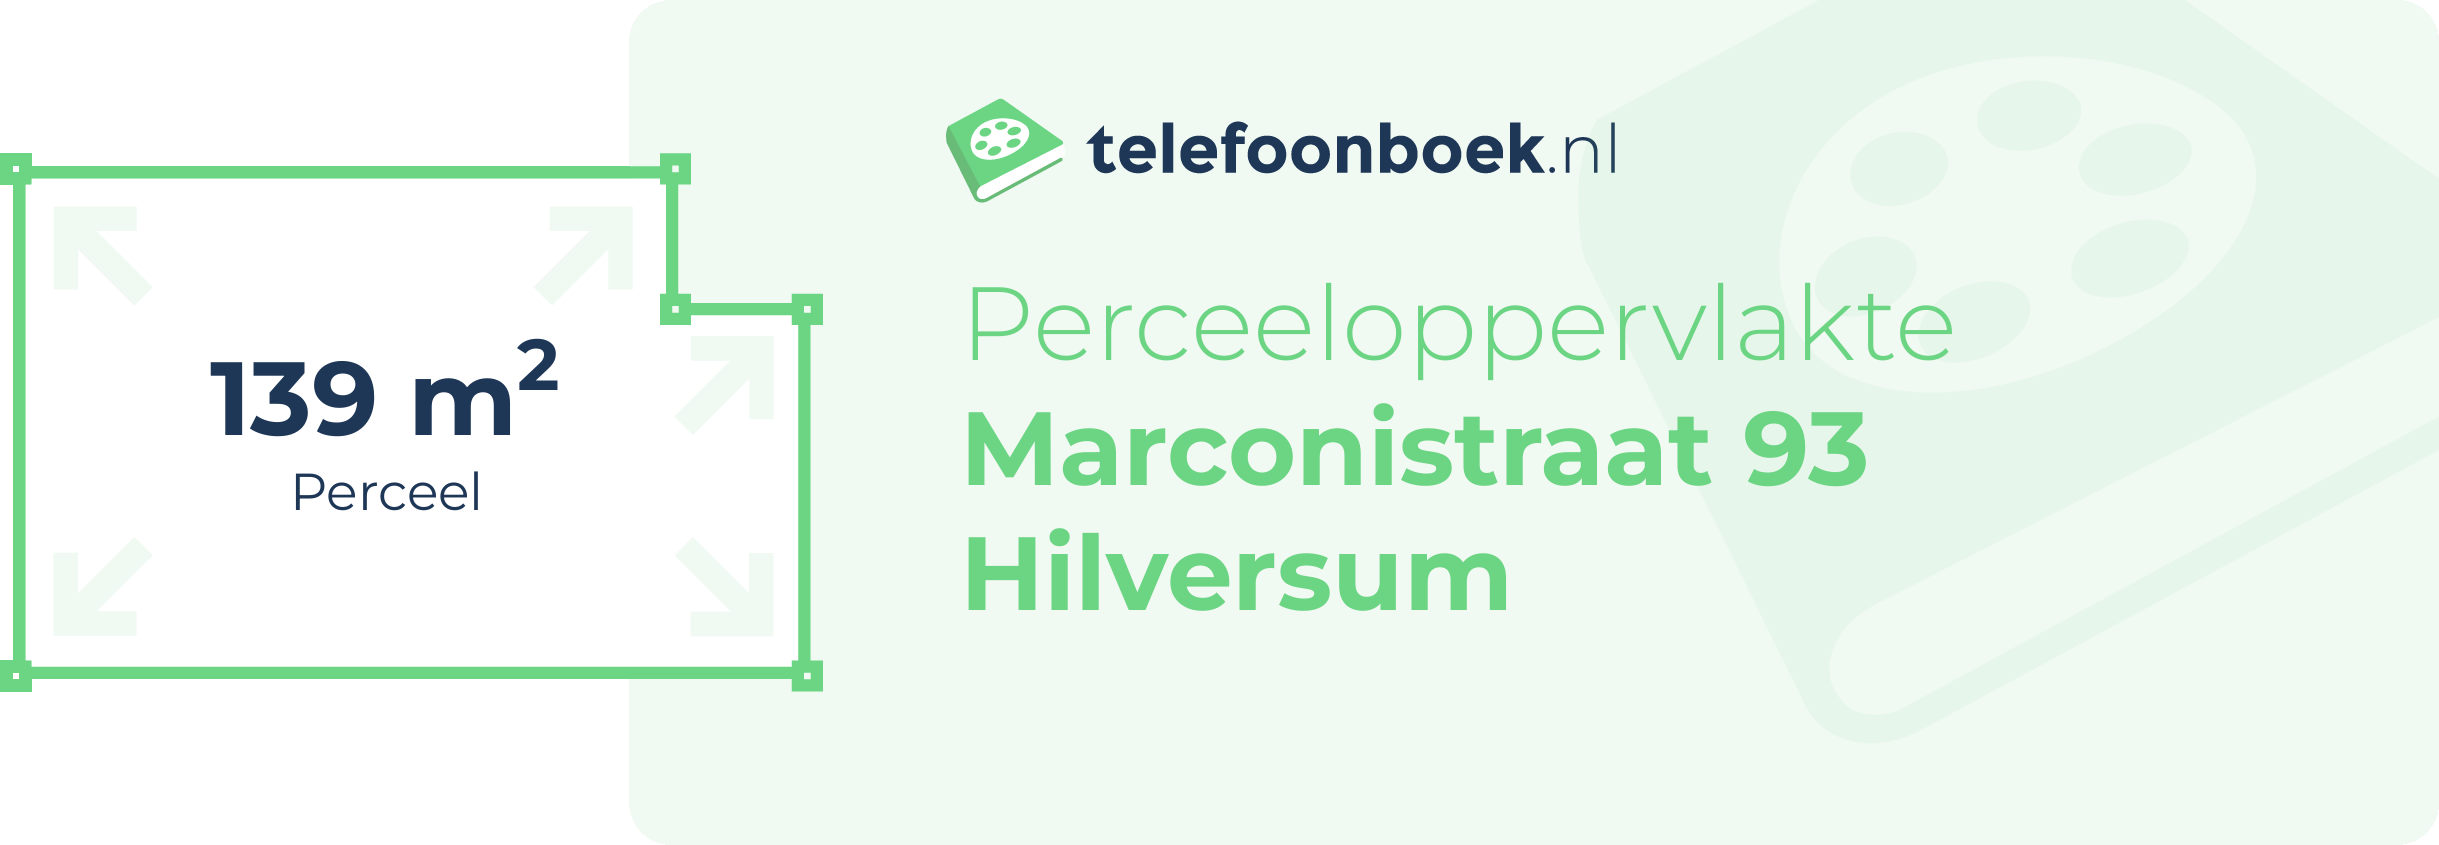 Perceeloppervlakte Marconistraat 93 Hilversum